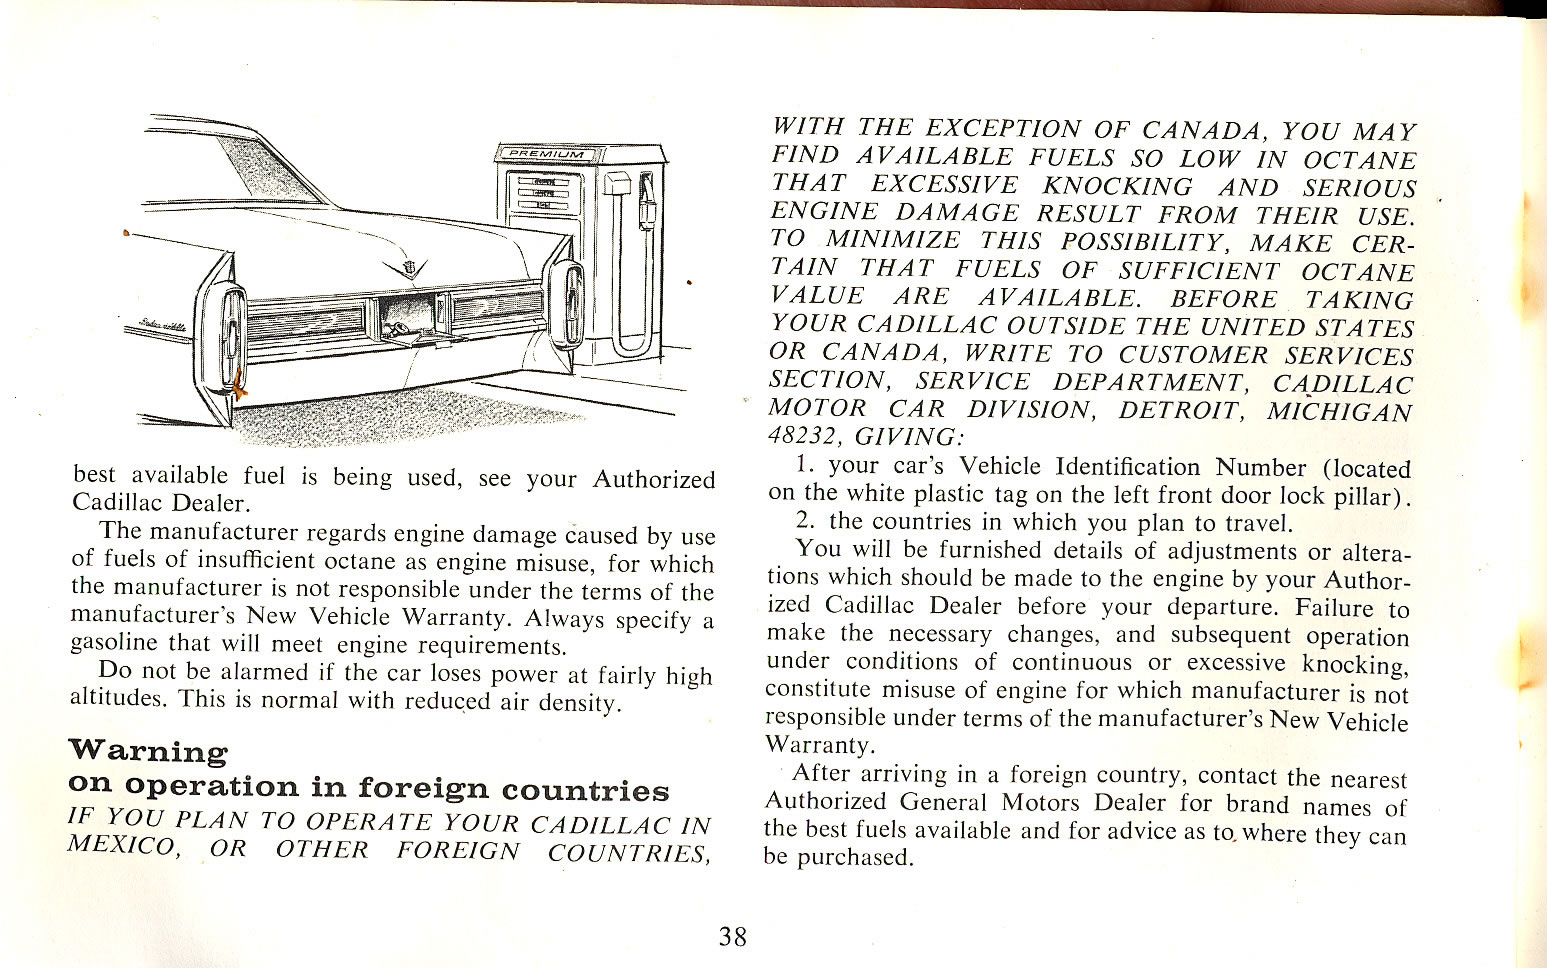 1965 Cadillac Manual-38